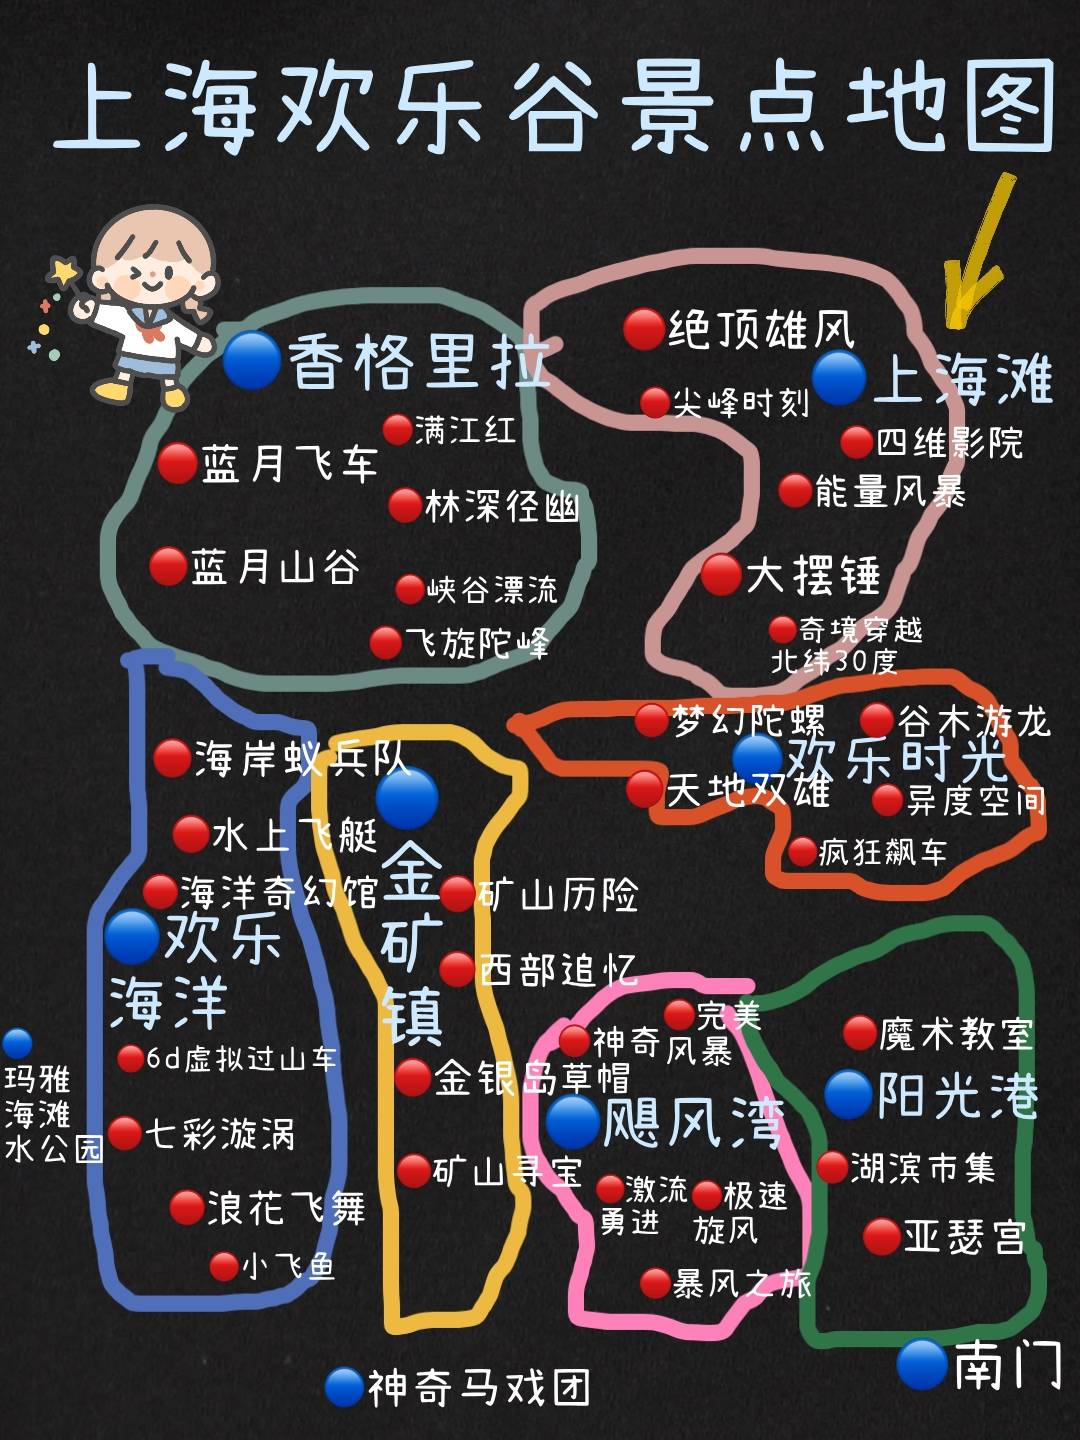 上海欢乐谷旅游攻略园区地图游玩路线及行李寄存